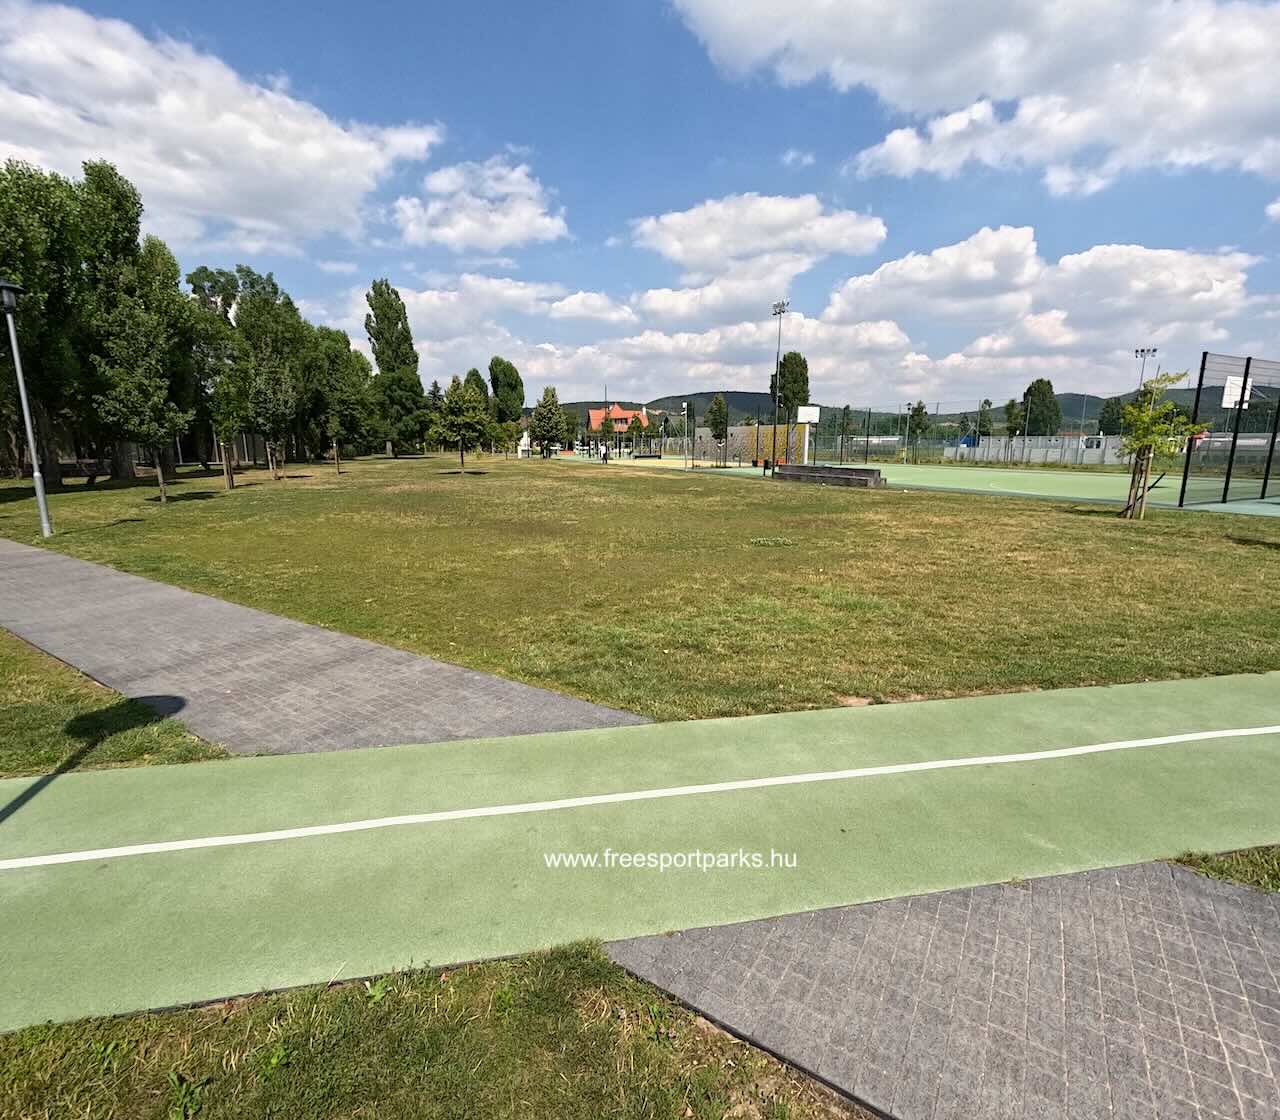 kisebb rét a sportpályák mellett, Máriaremetei Közösségi Liget - Free Sport Parks Blog